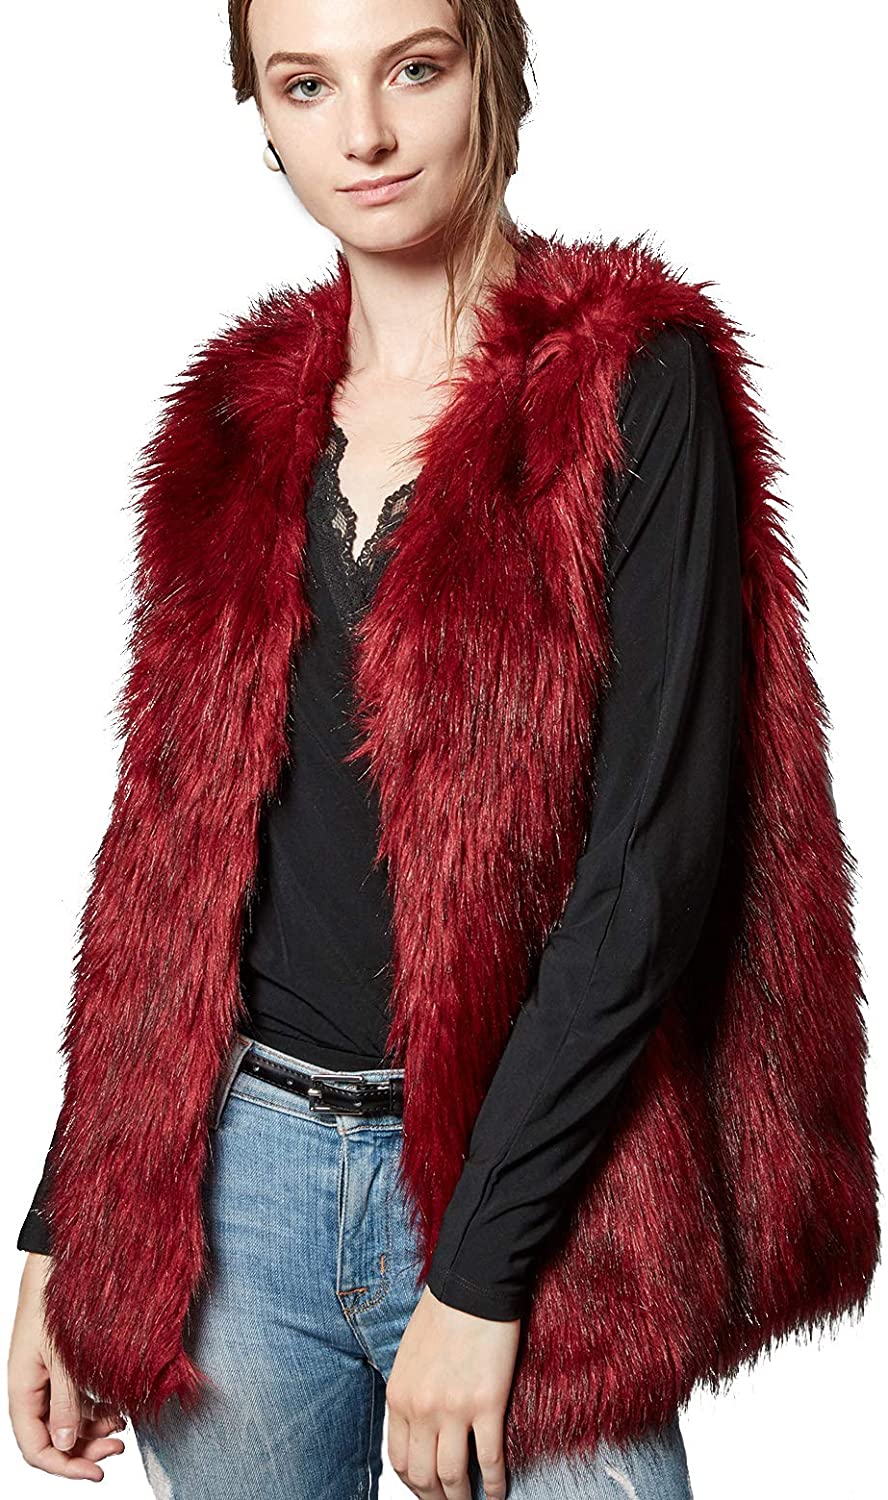 Escalier Womens Faux Fur Vest Waistcoat Sleeveless Jacket 